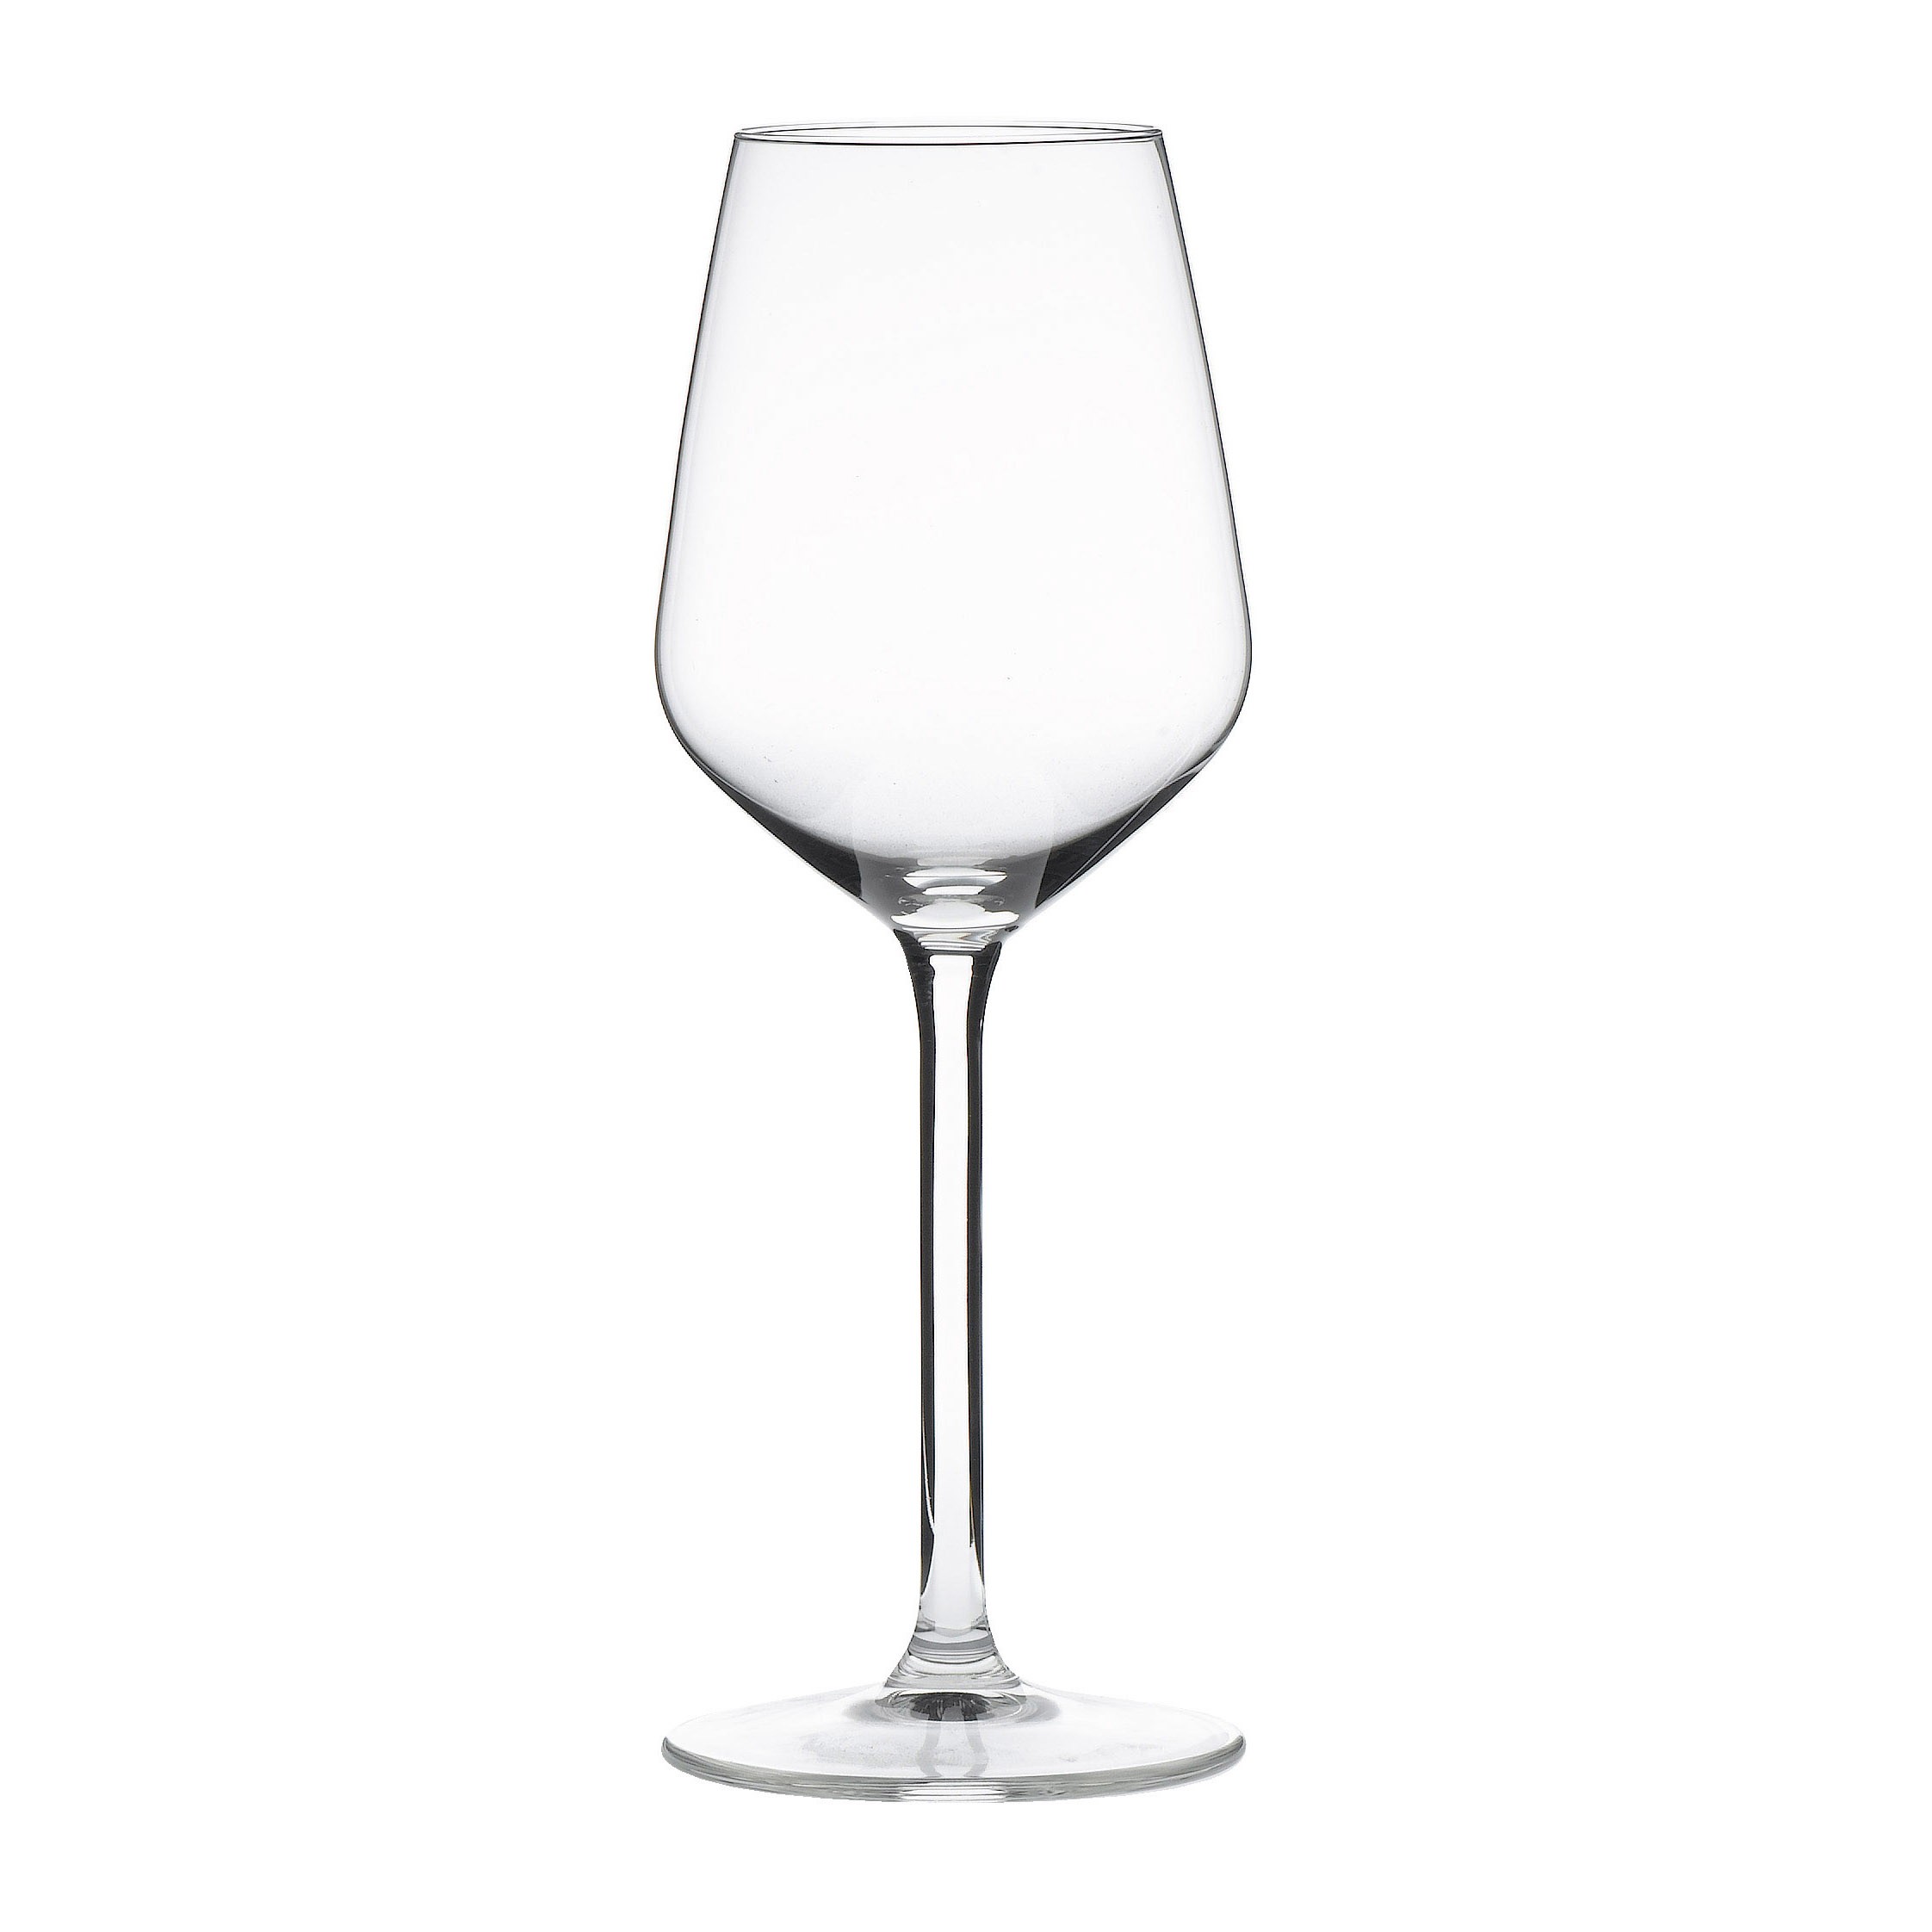 Royal Leerdam Carré White Wine Glasses 10oz / 28cl 